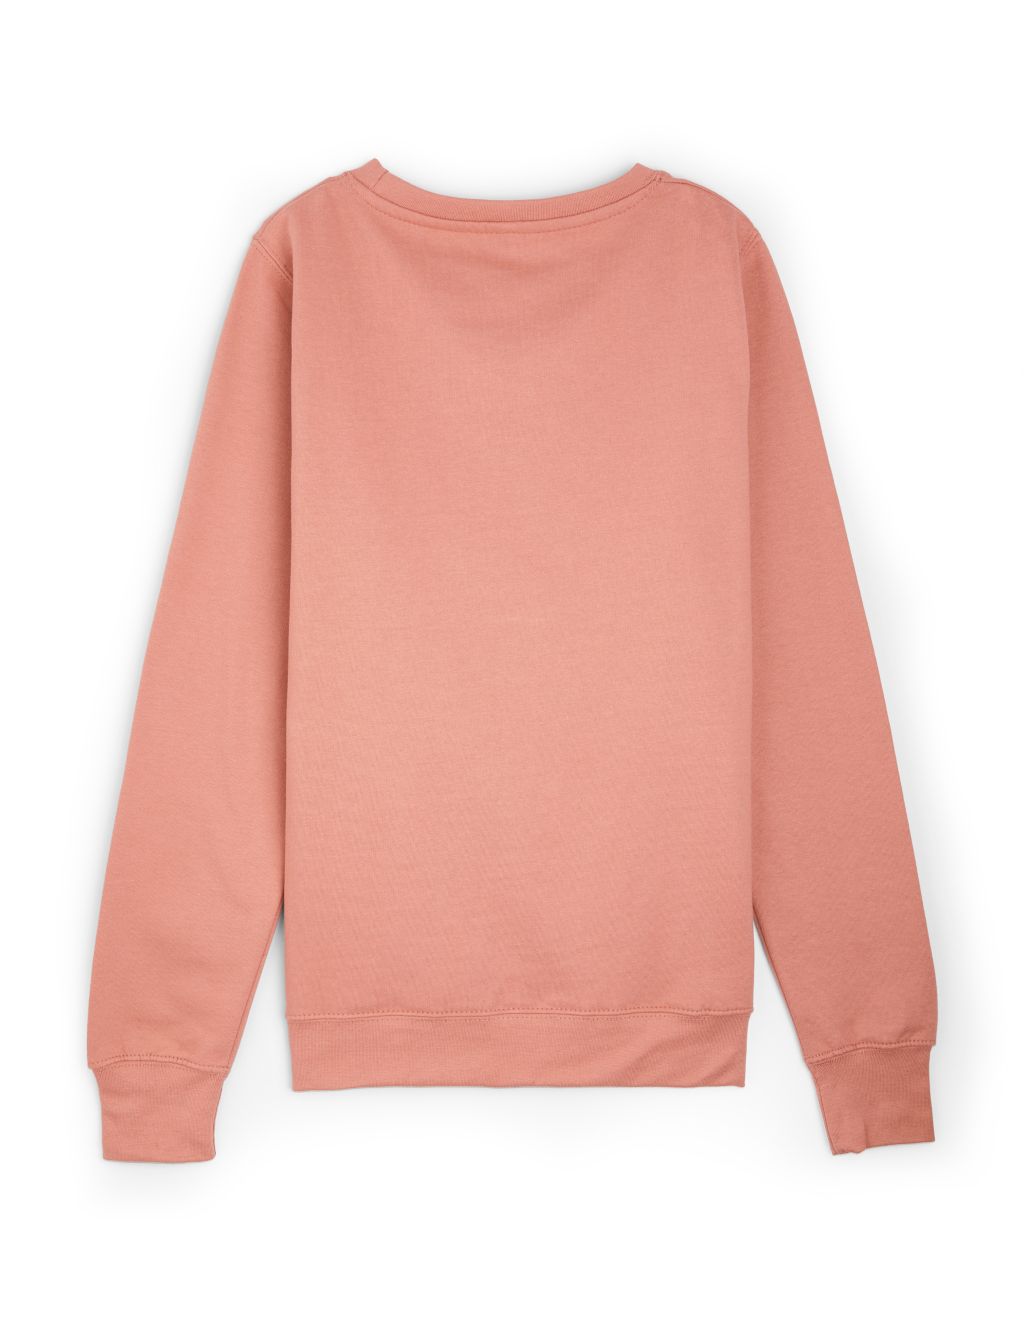 Personalised Ladies Dandelion Sweatshirt image 2